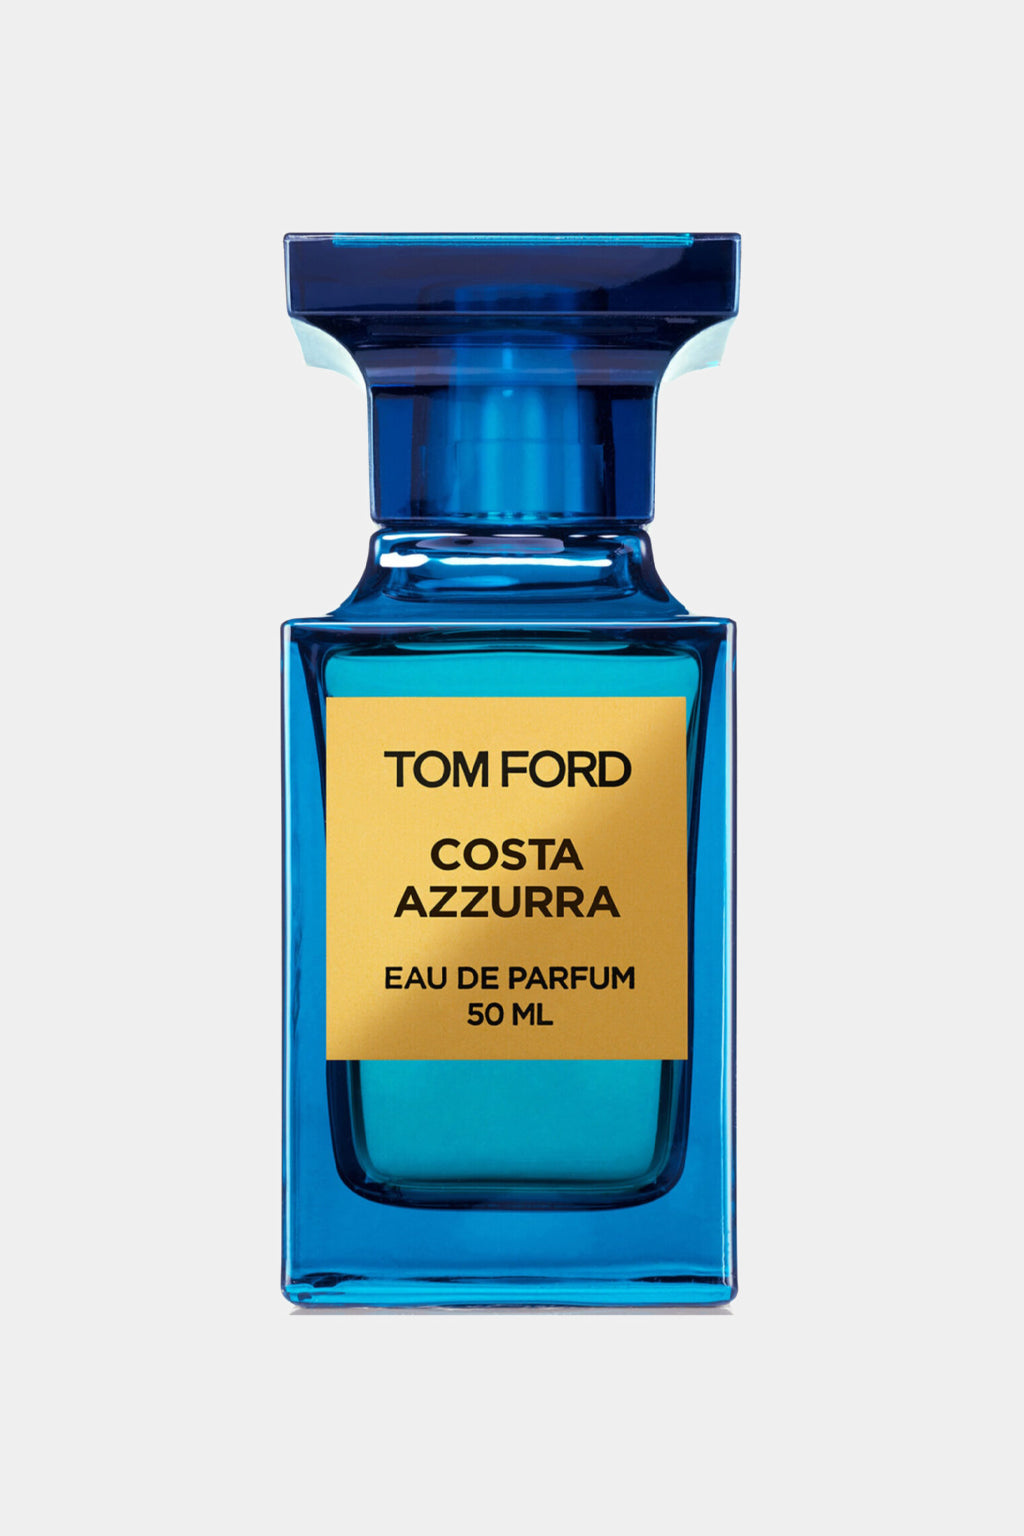 Tom Ford - Costa Azzurra Eau de Parfum